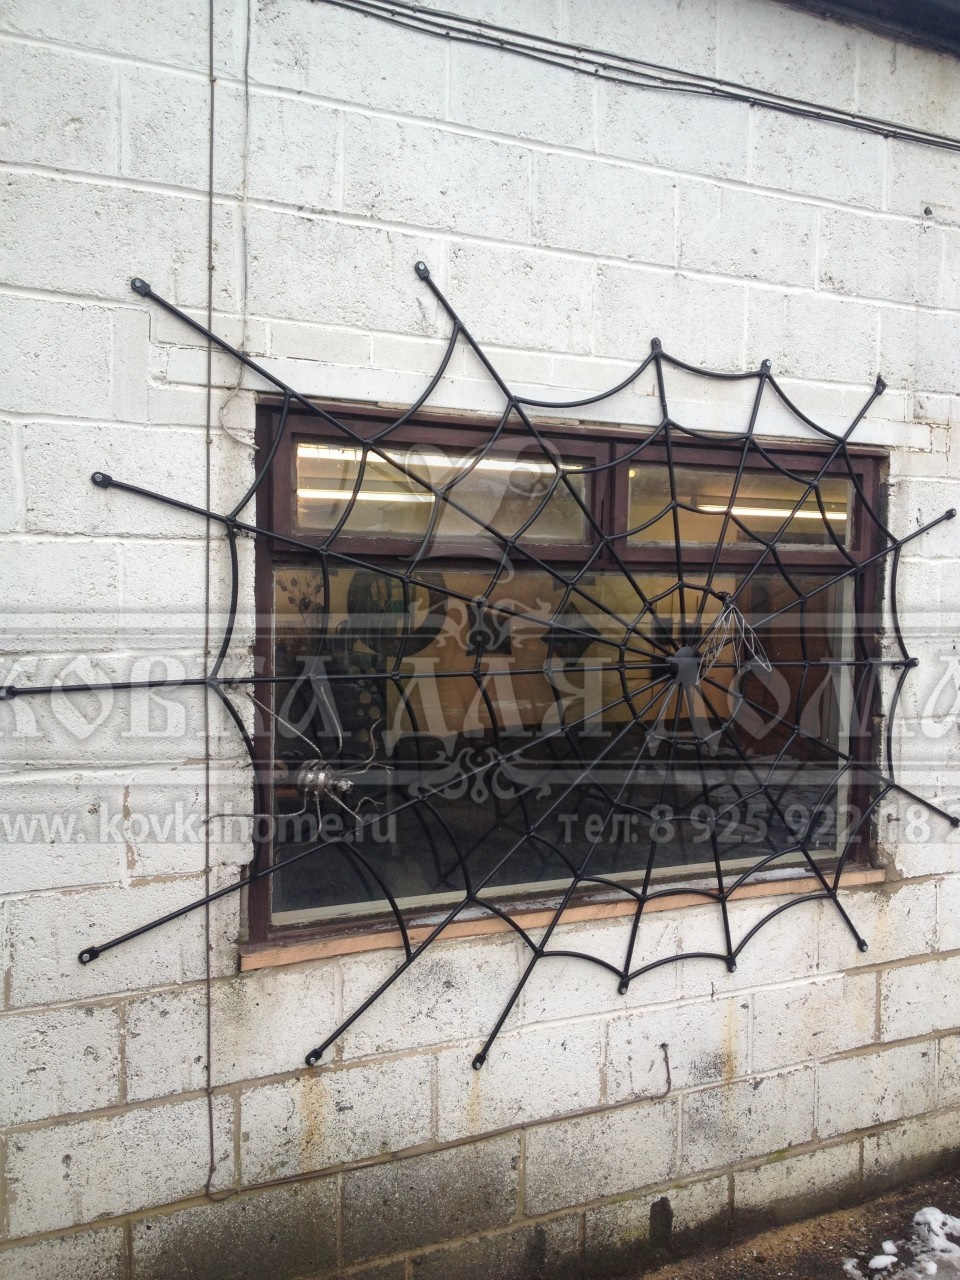 Пример кованой решетки на окне с паутиной и пауками